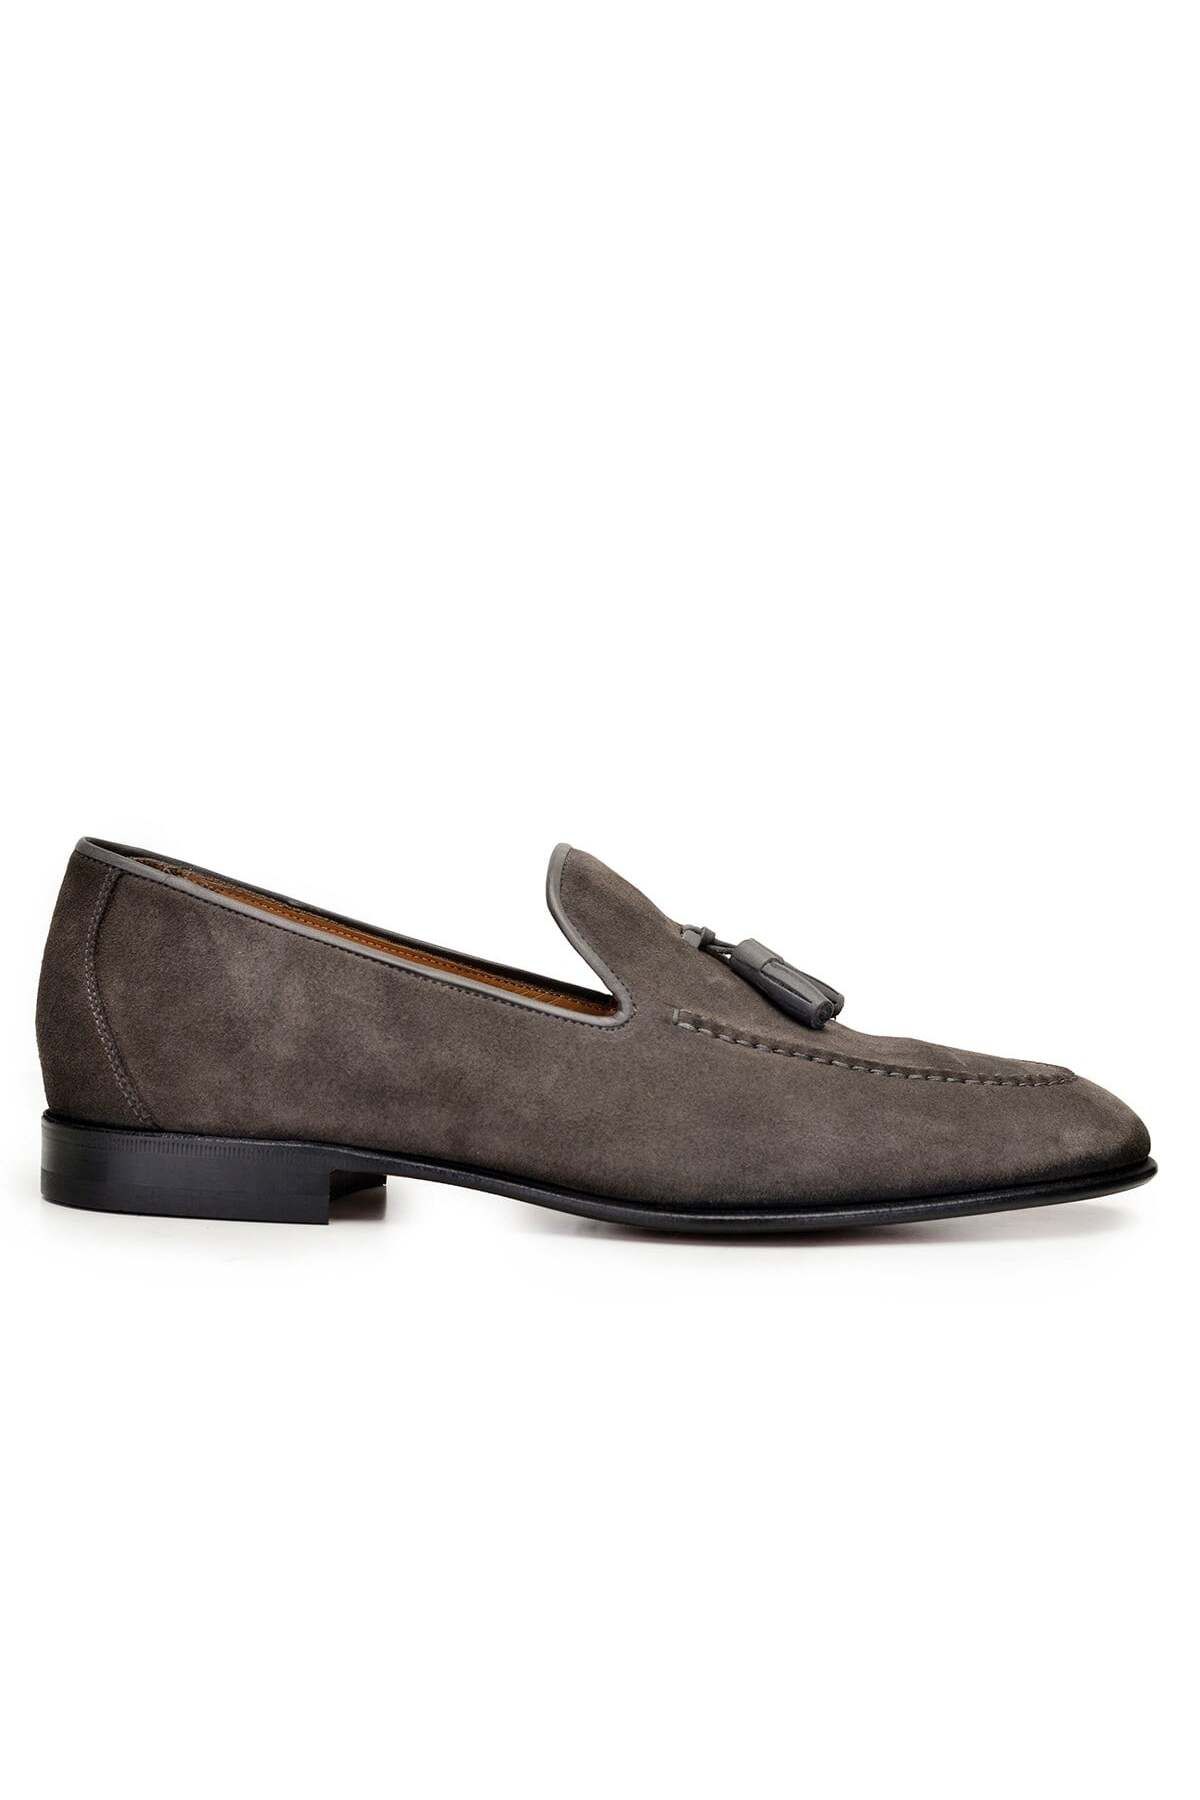 Nevzat Onay Gri Klasik Loafer Erkek Ayakkabı -9860-